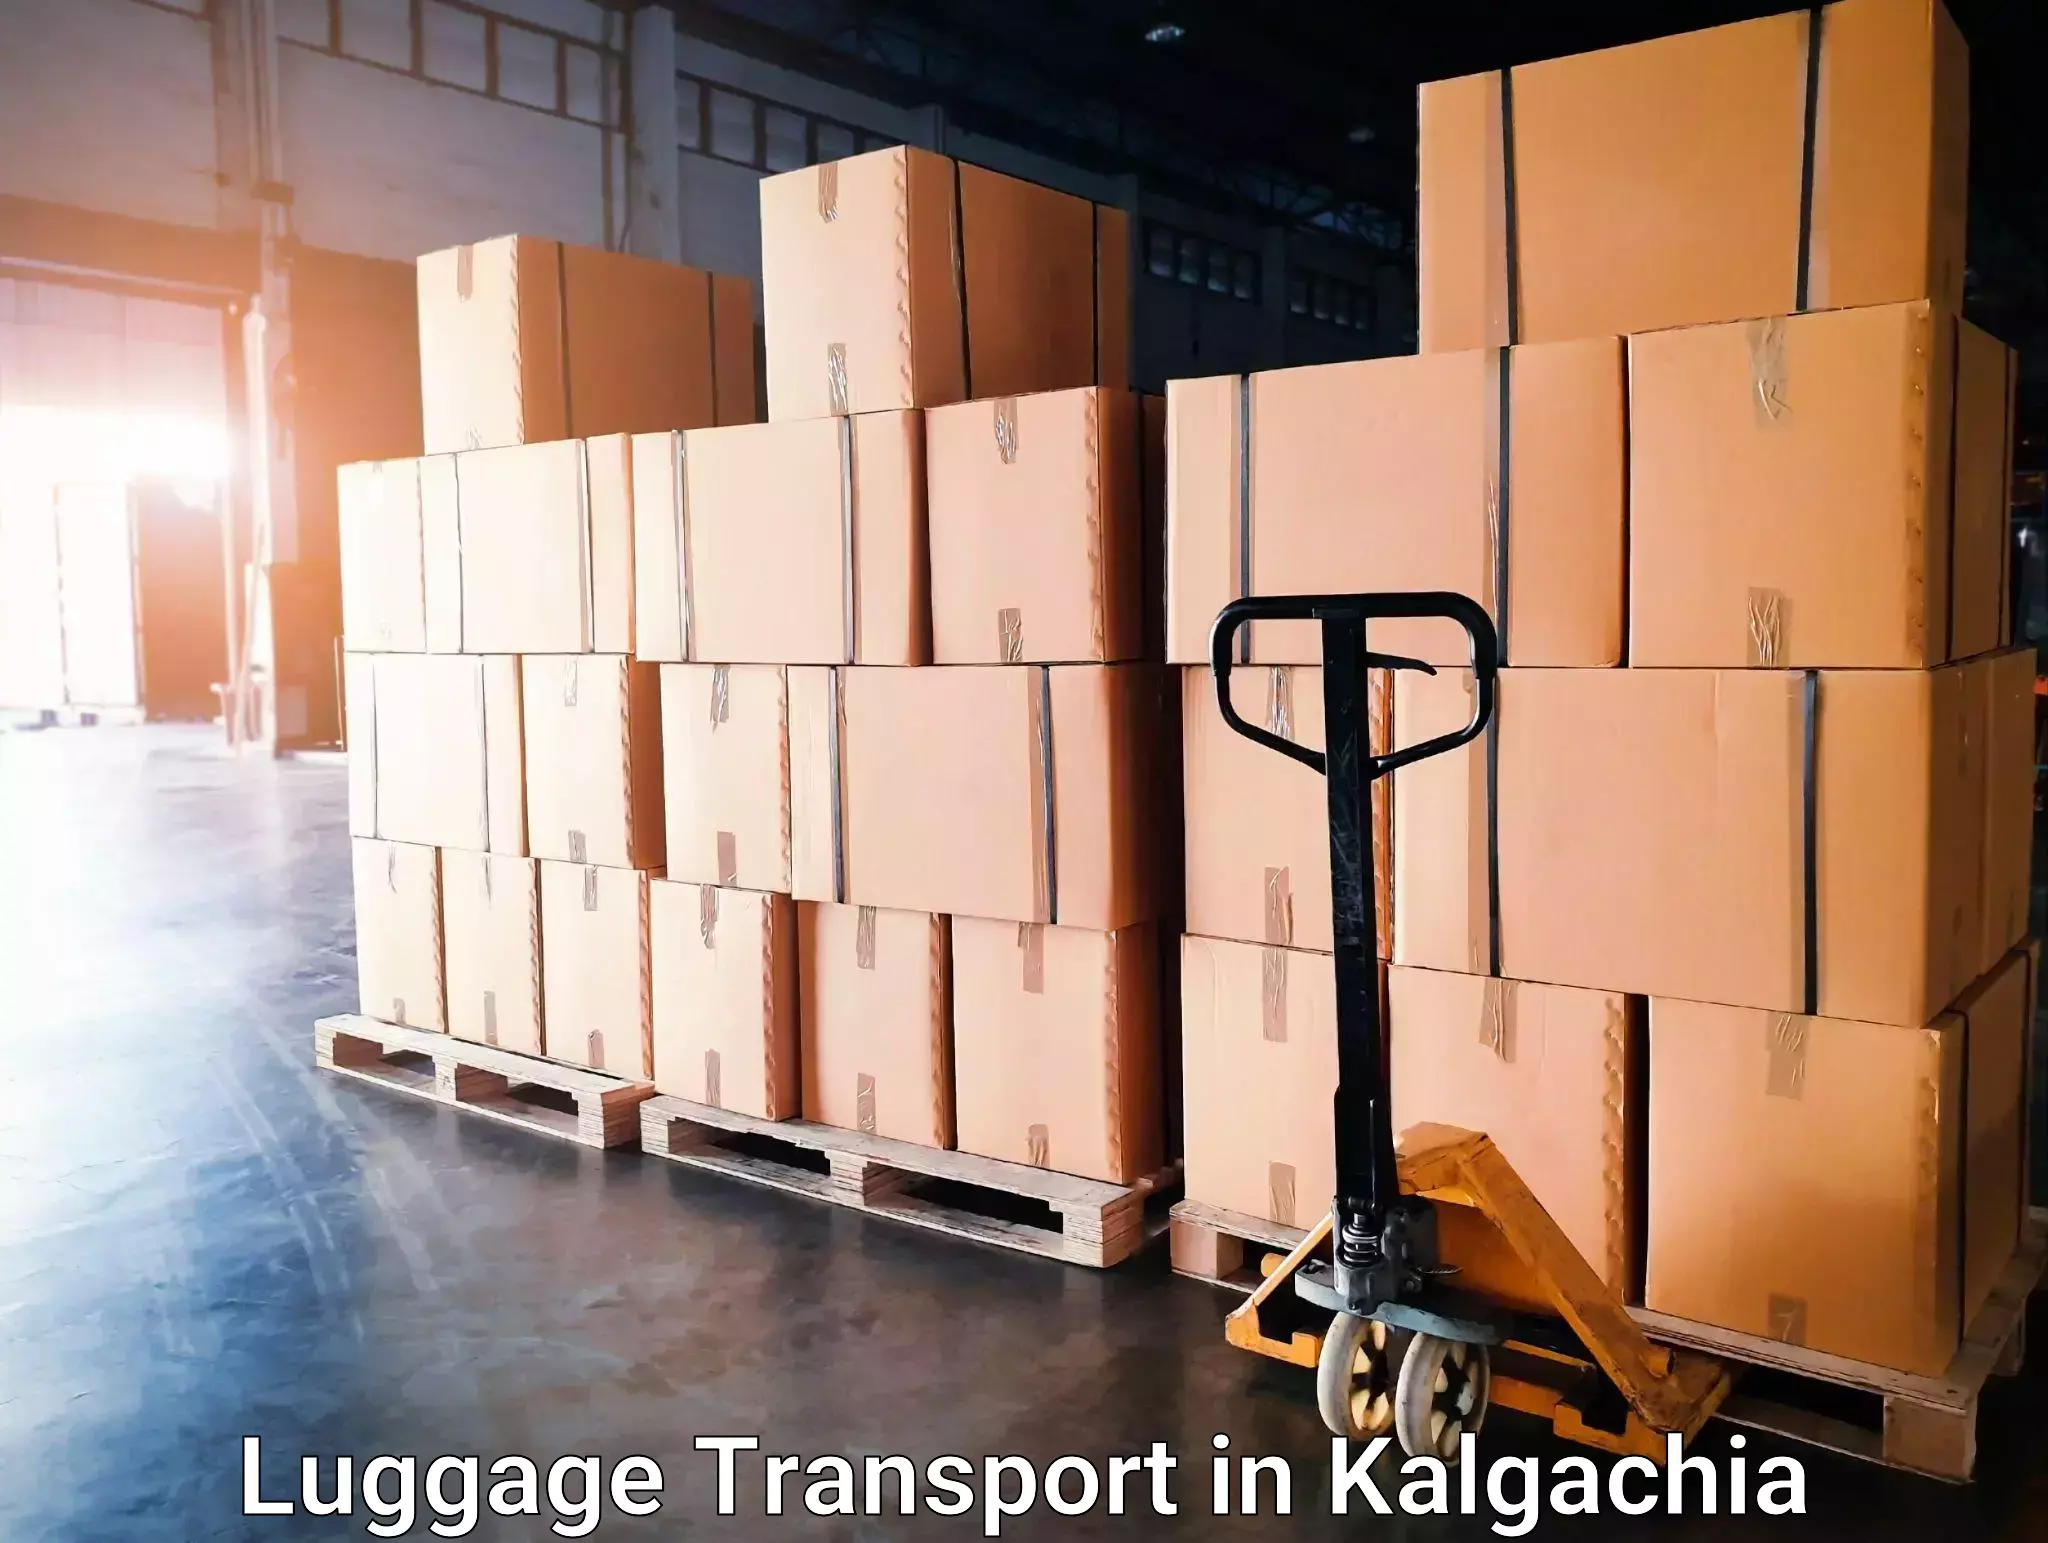 Train station baggage courier in Kalgachia